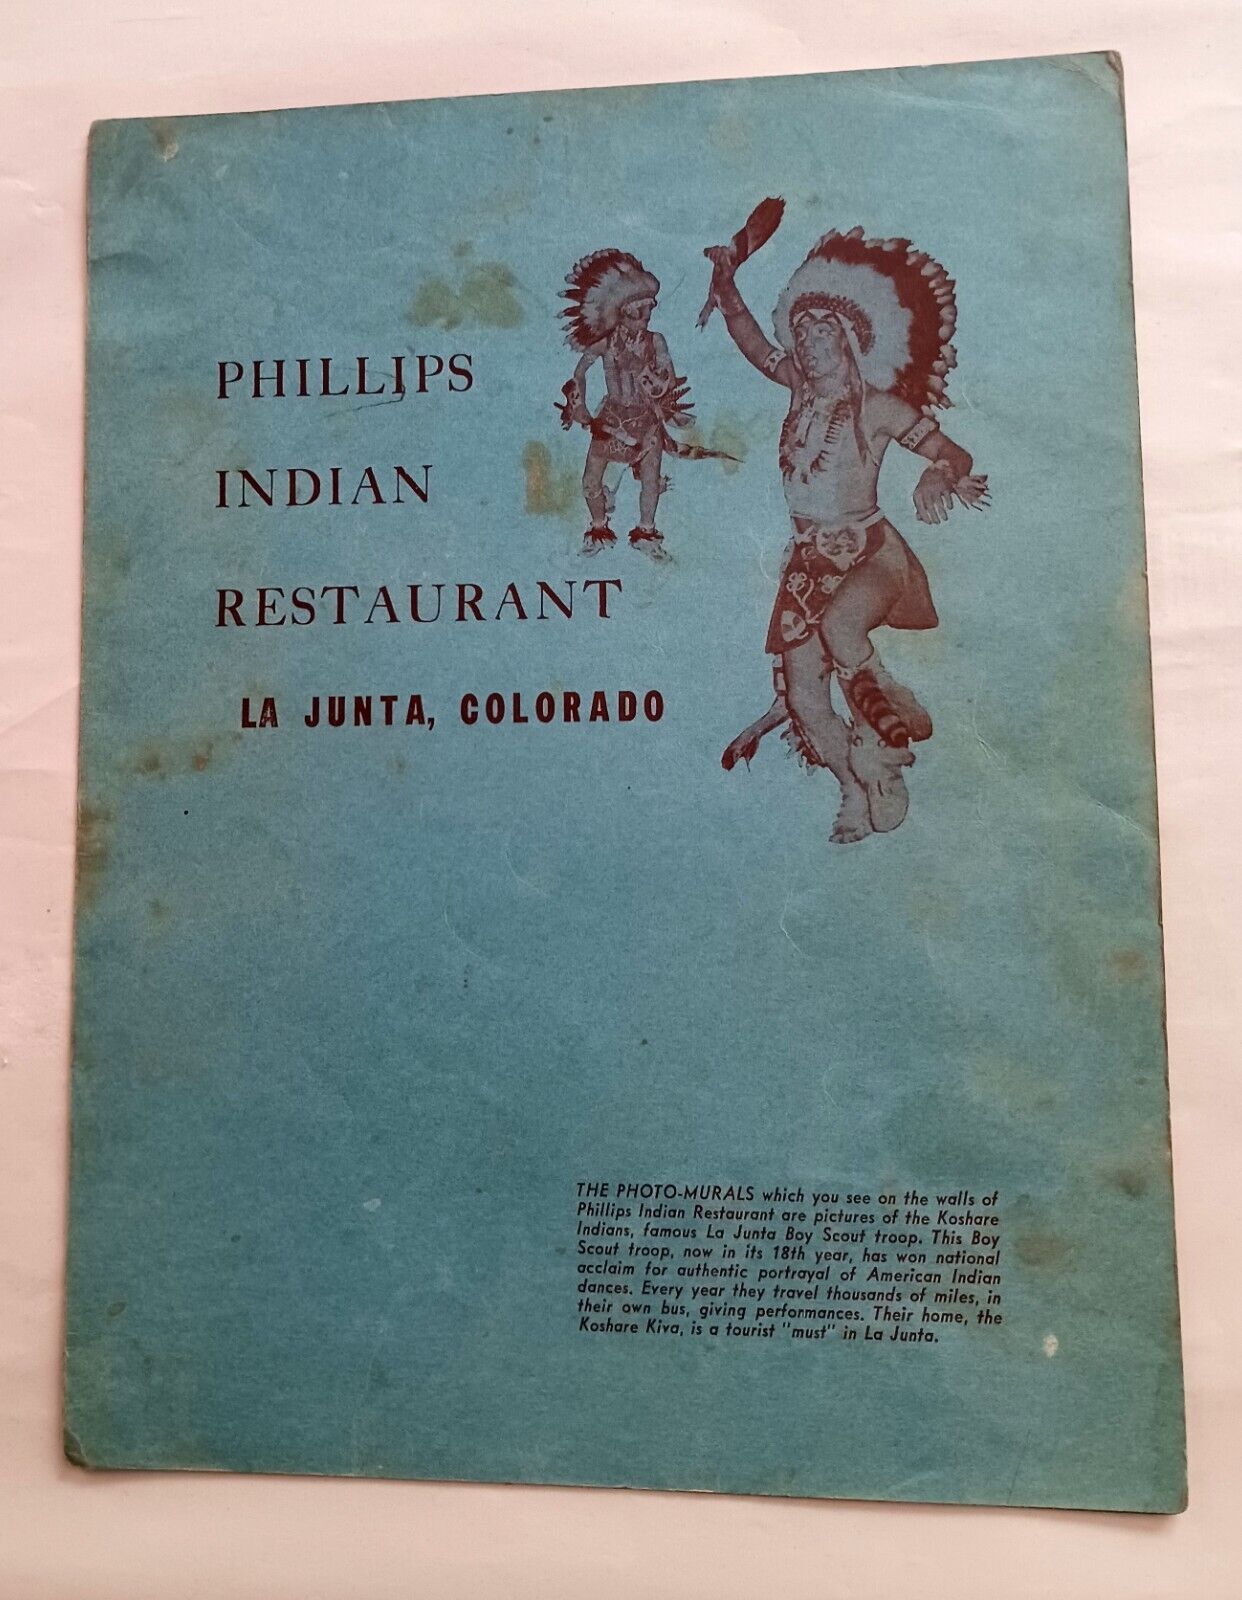 Vintage Menu Phillips Indian Restaurant La Junta Colorado Cheeseburger 45 Cents